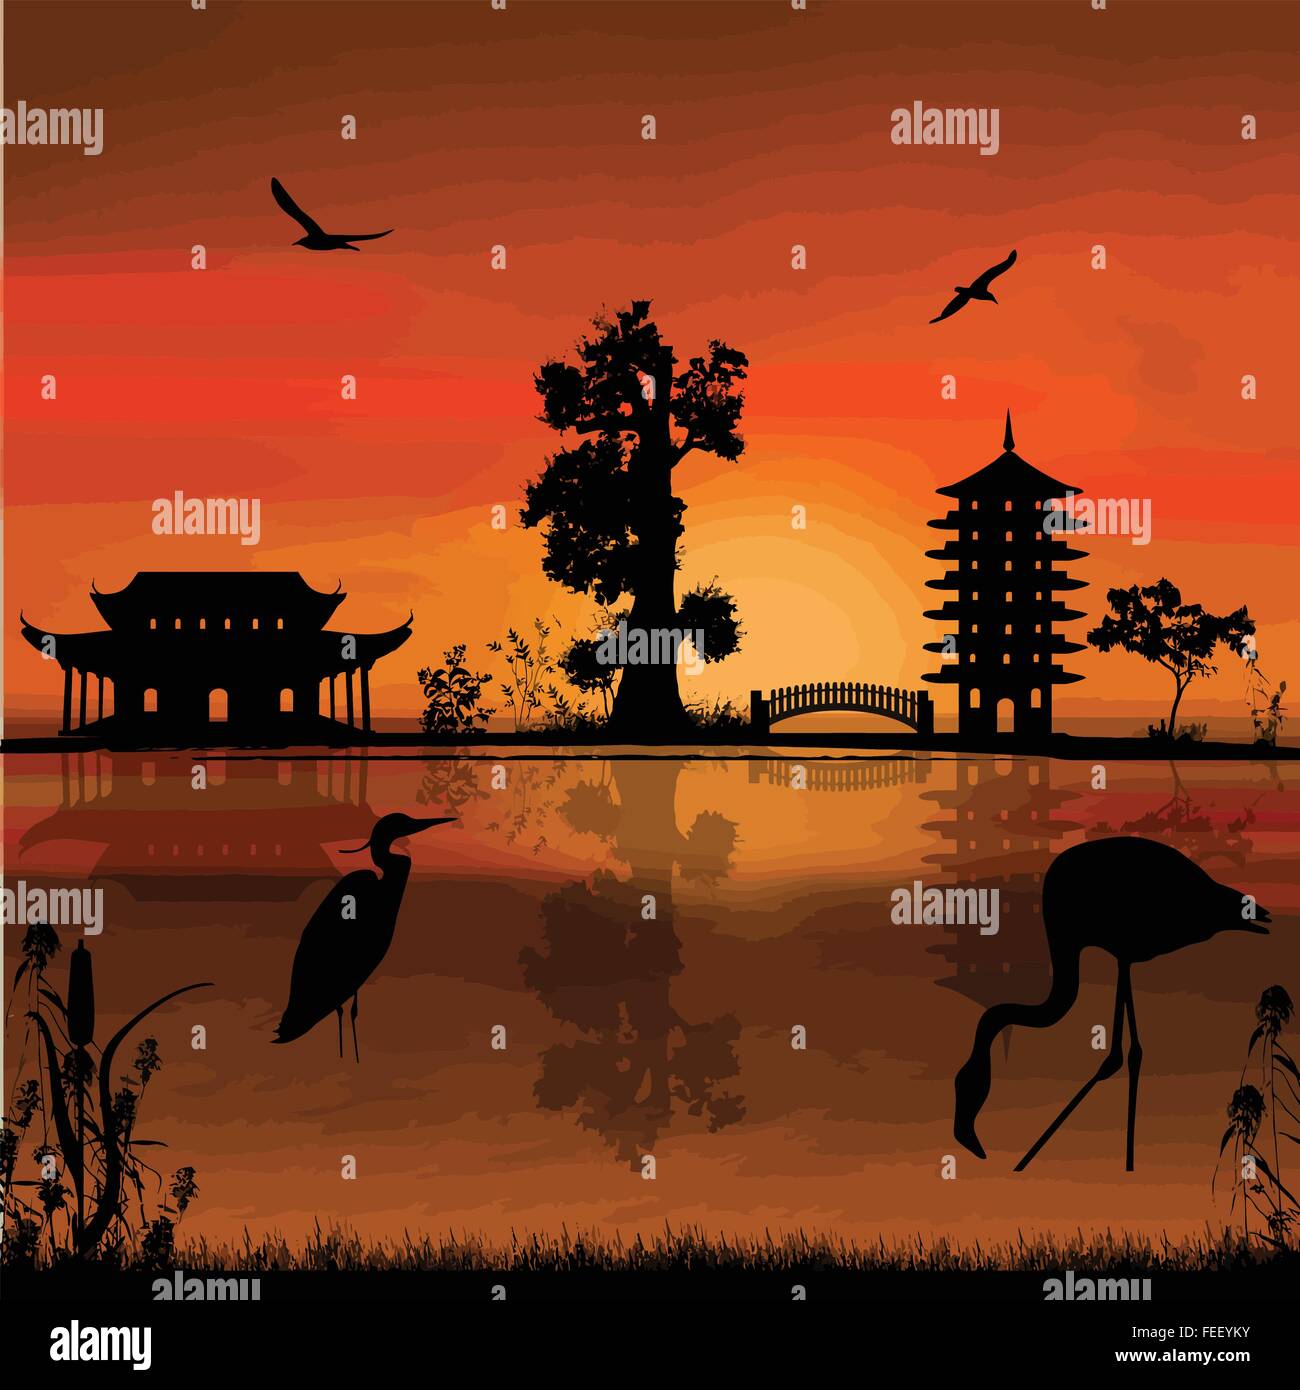 Beautiful asian landscape near water on sunset, vector illustration Stock Vector